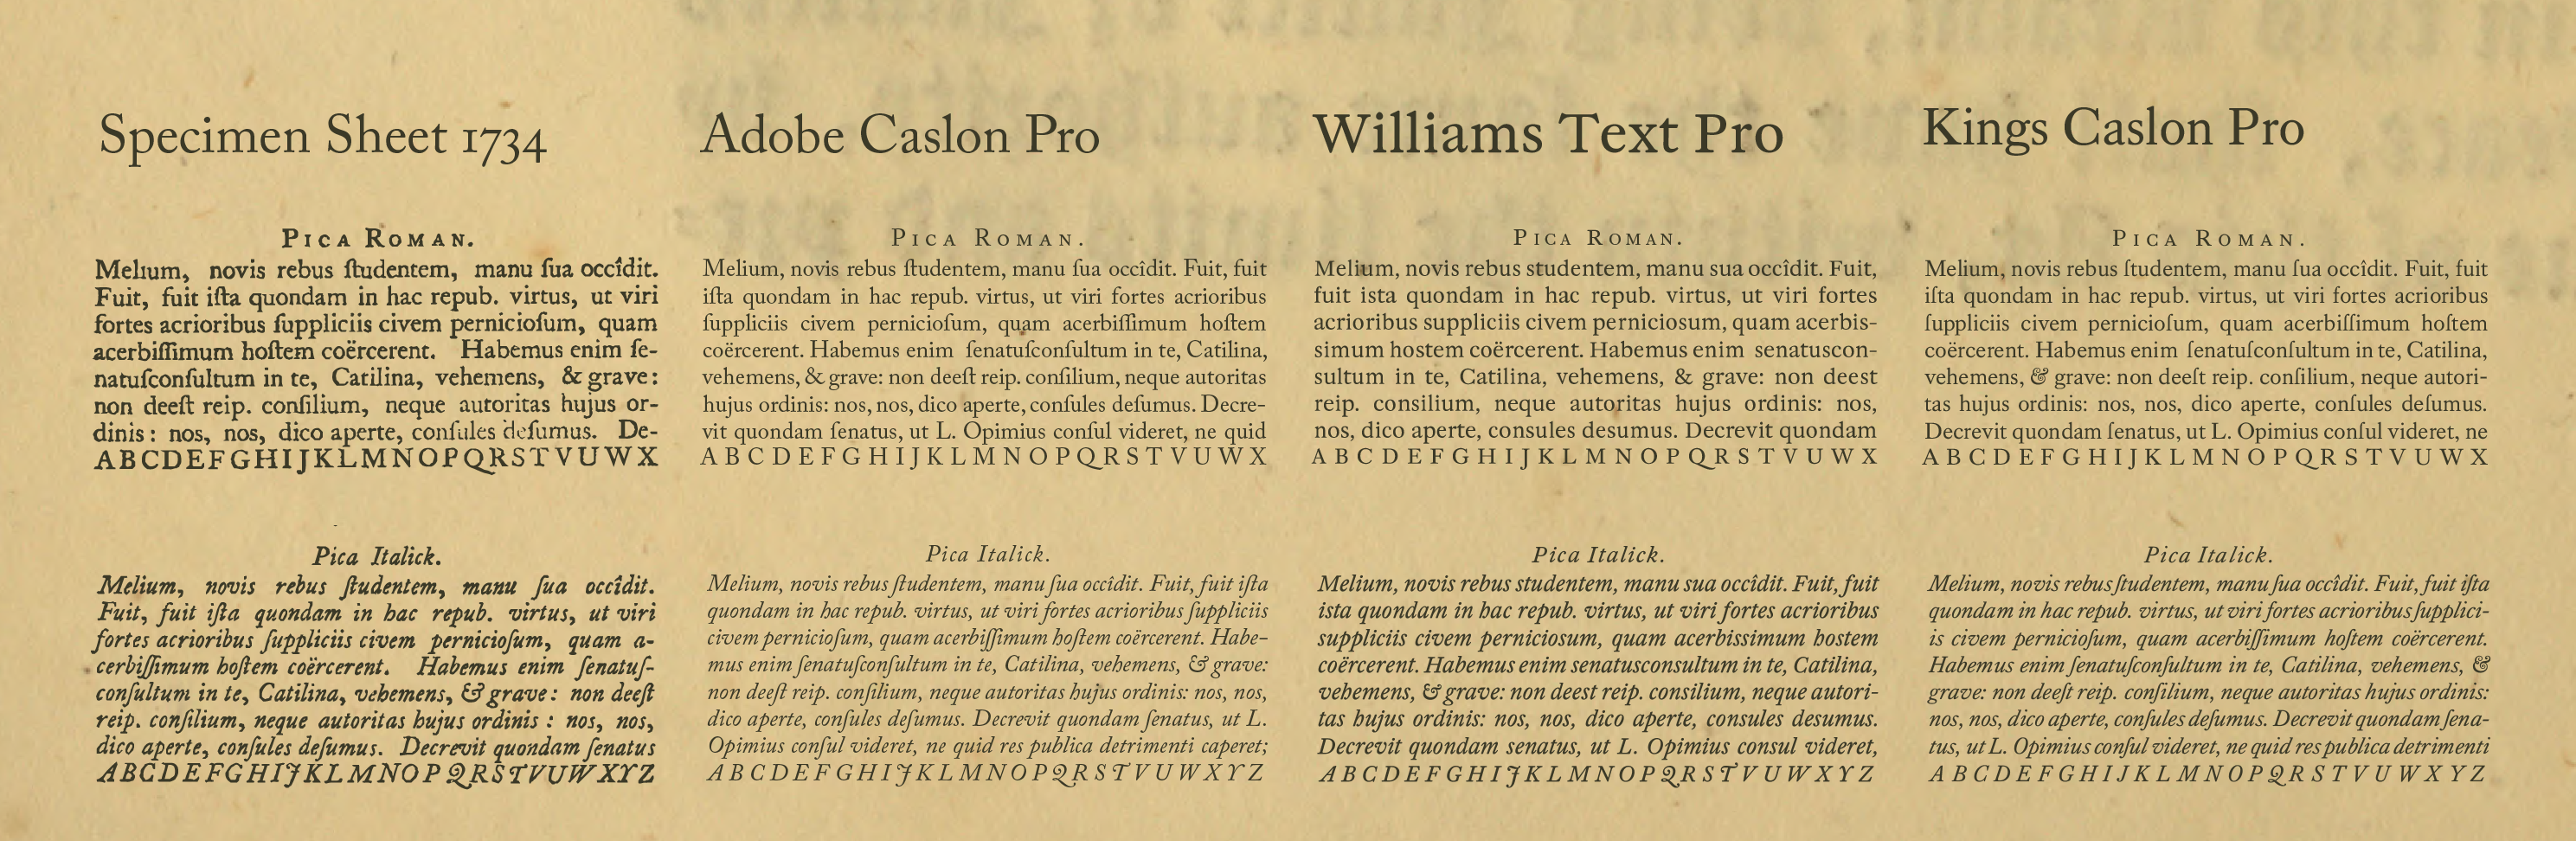 Comparison of different Caslon Fonts